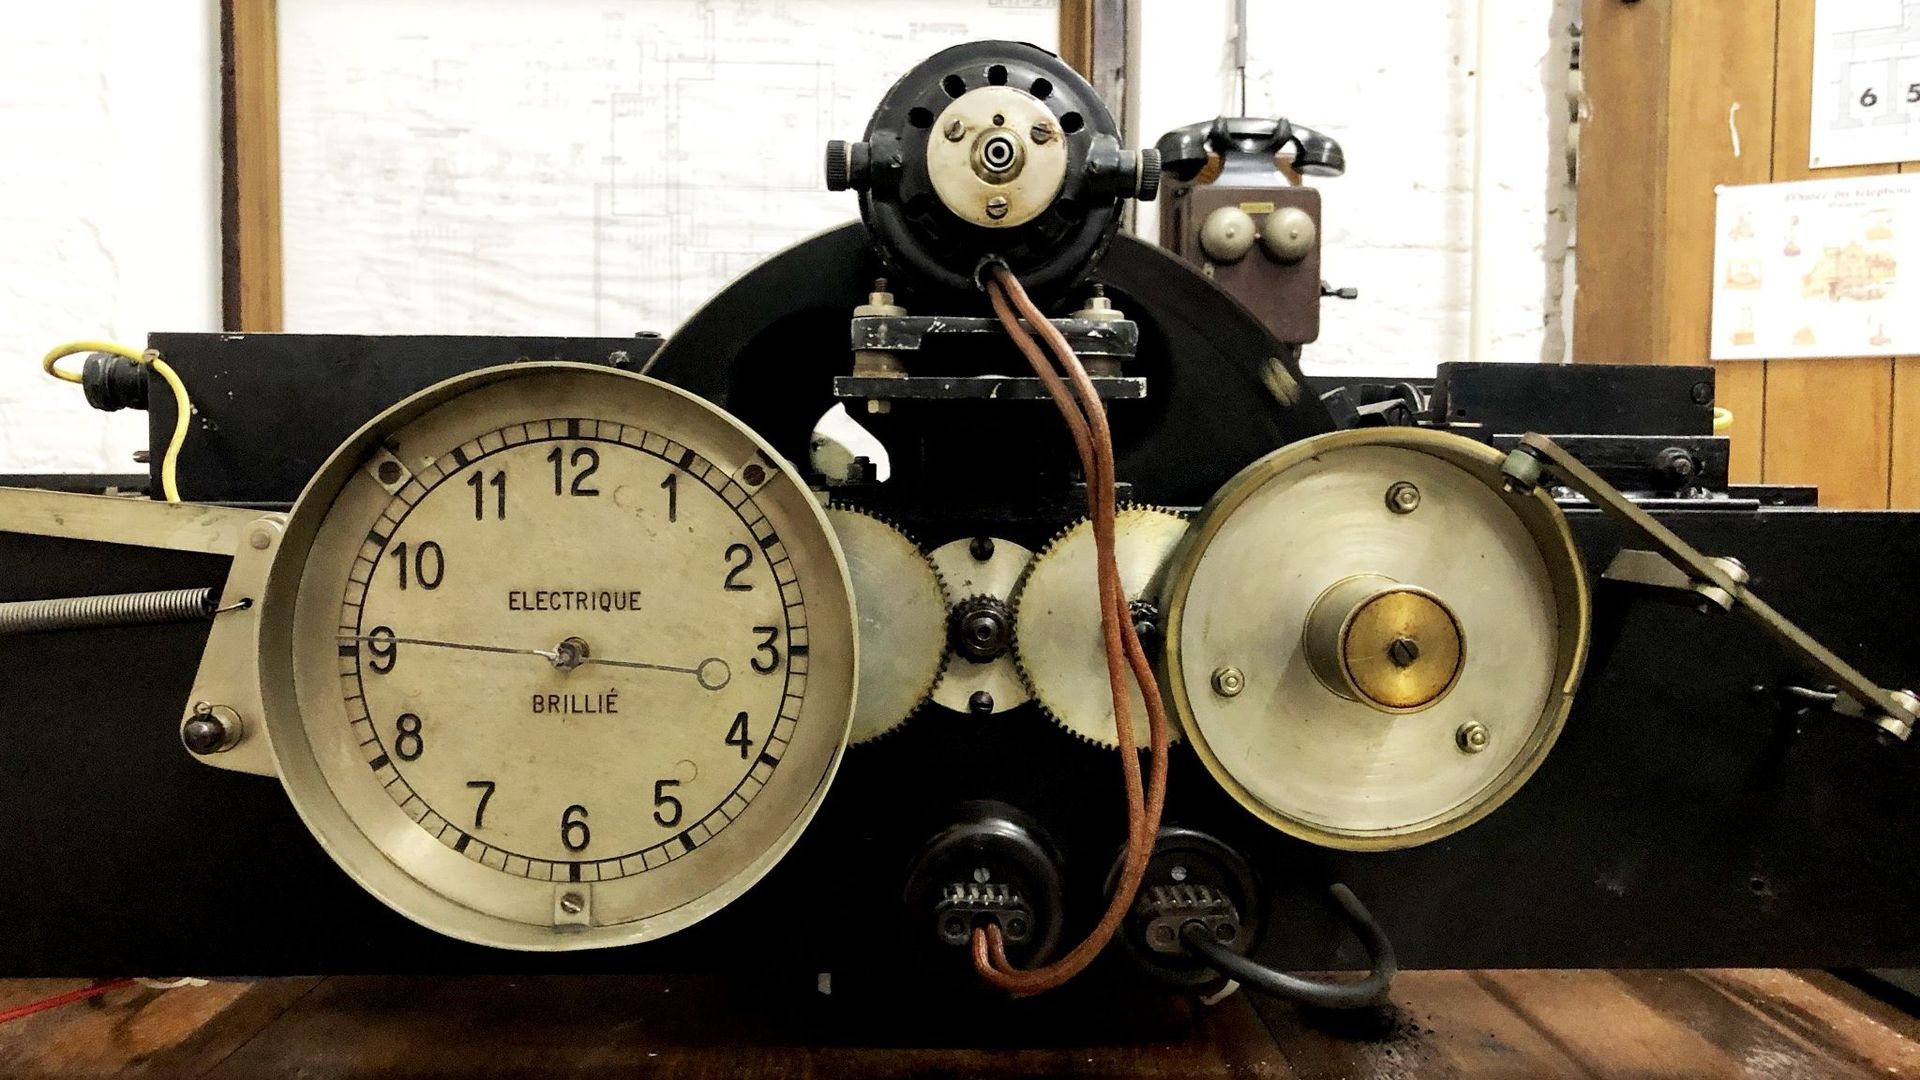 La première horloge parlante belge mise en service en 1941 et conservée au musée de la Téléphonie de Lantin